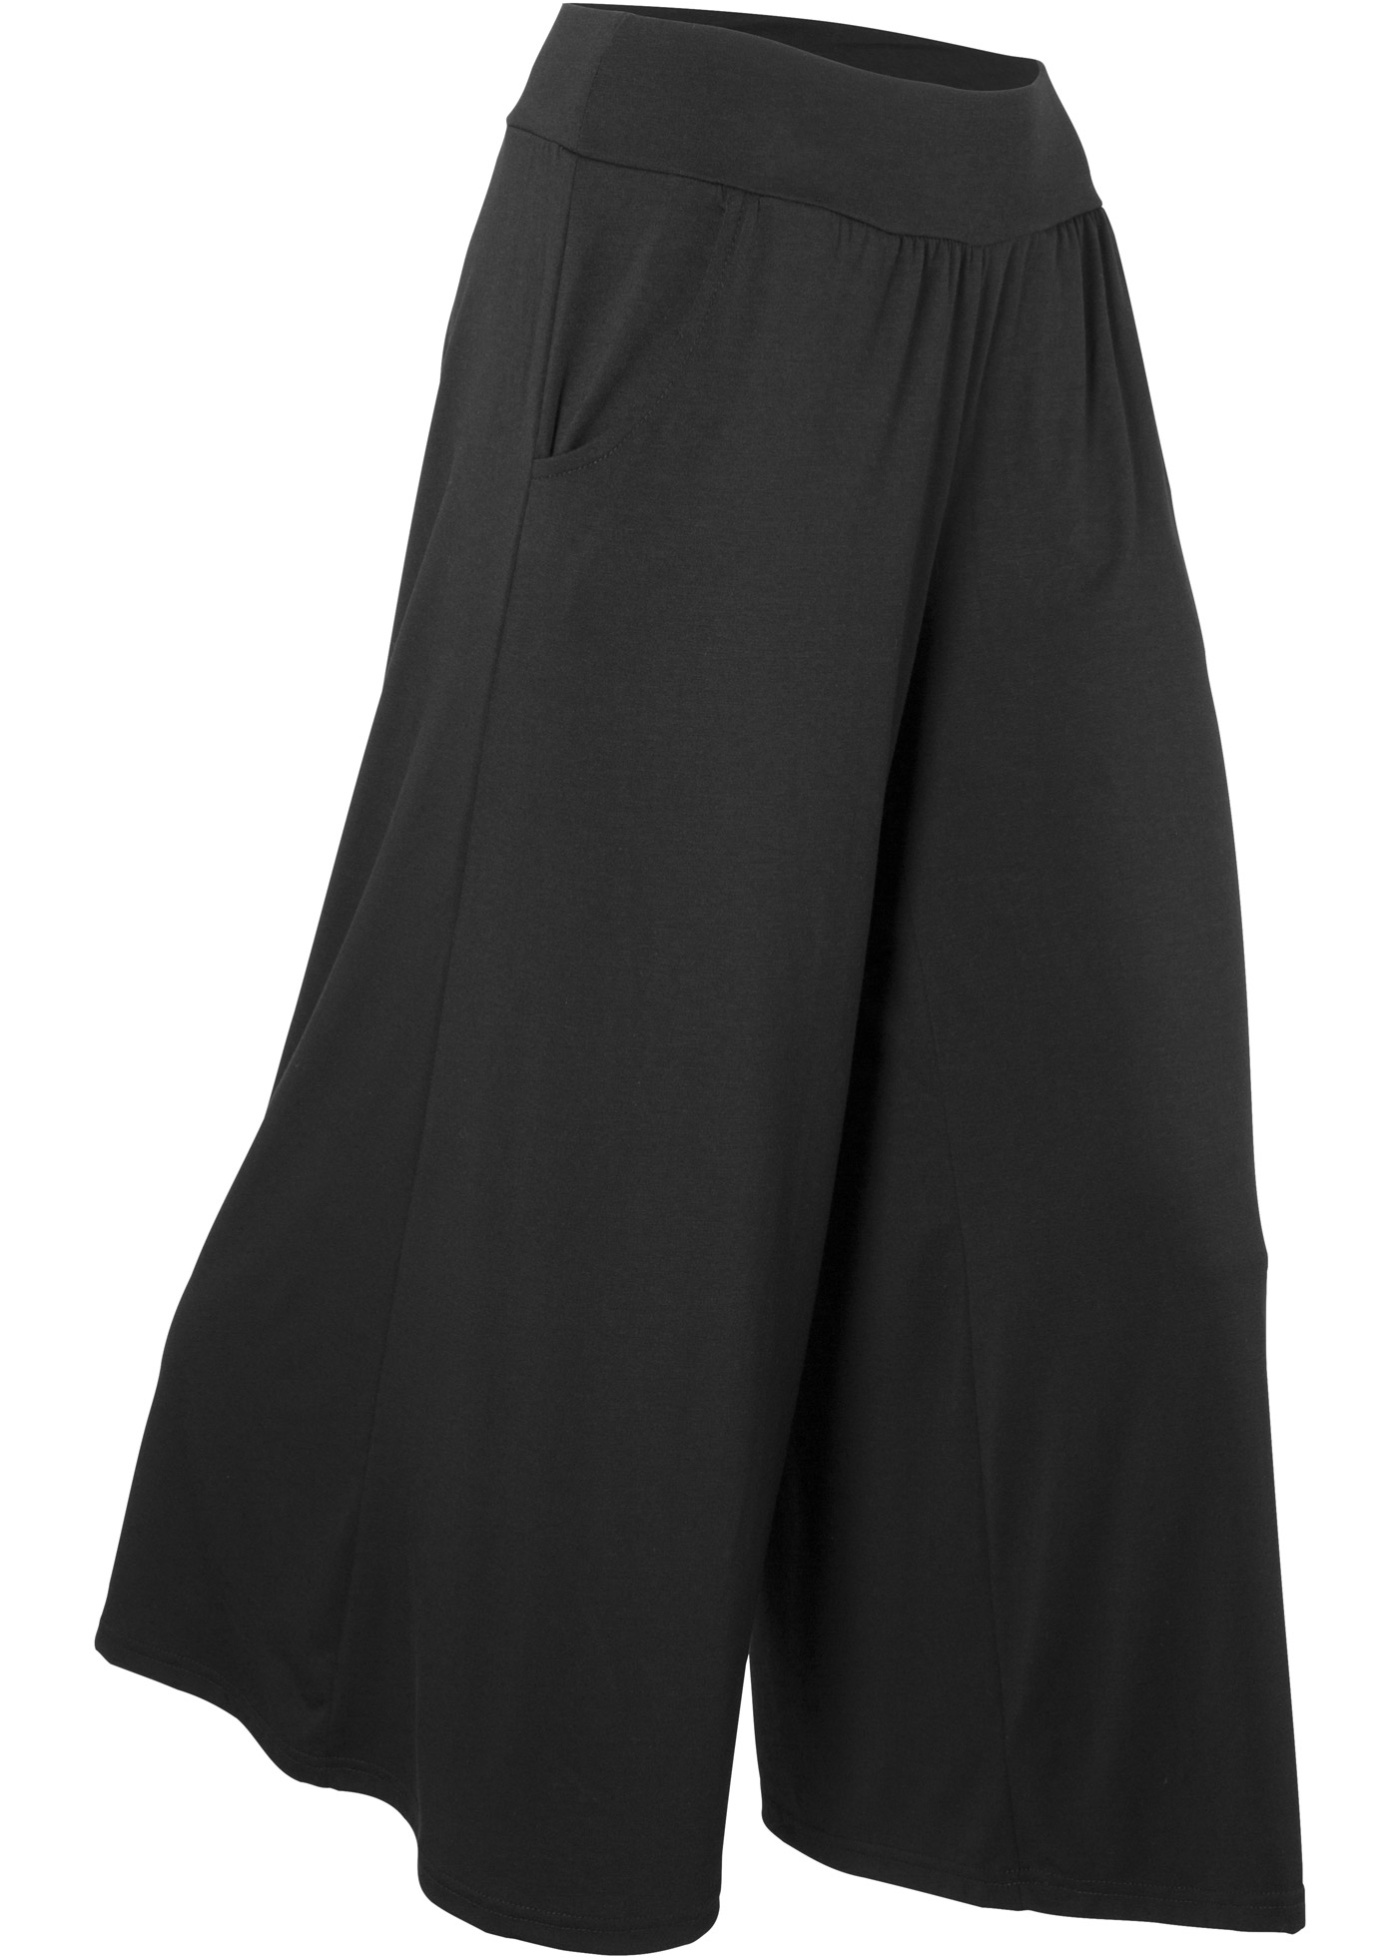 Weiche Culotte-Hose aus einem Stretch-Material mit Eingrifftaschen (91876295) in schwarz